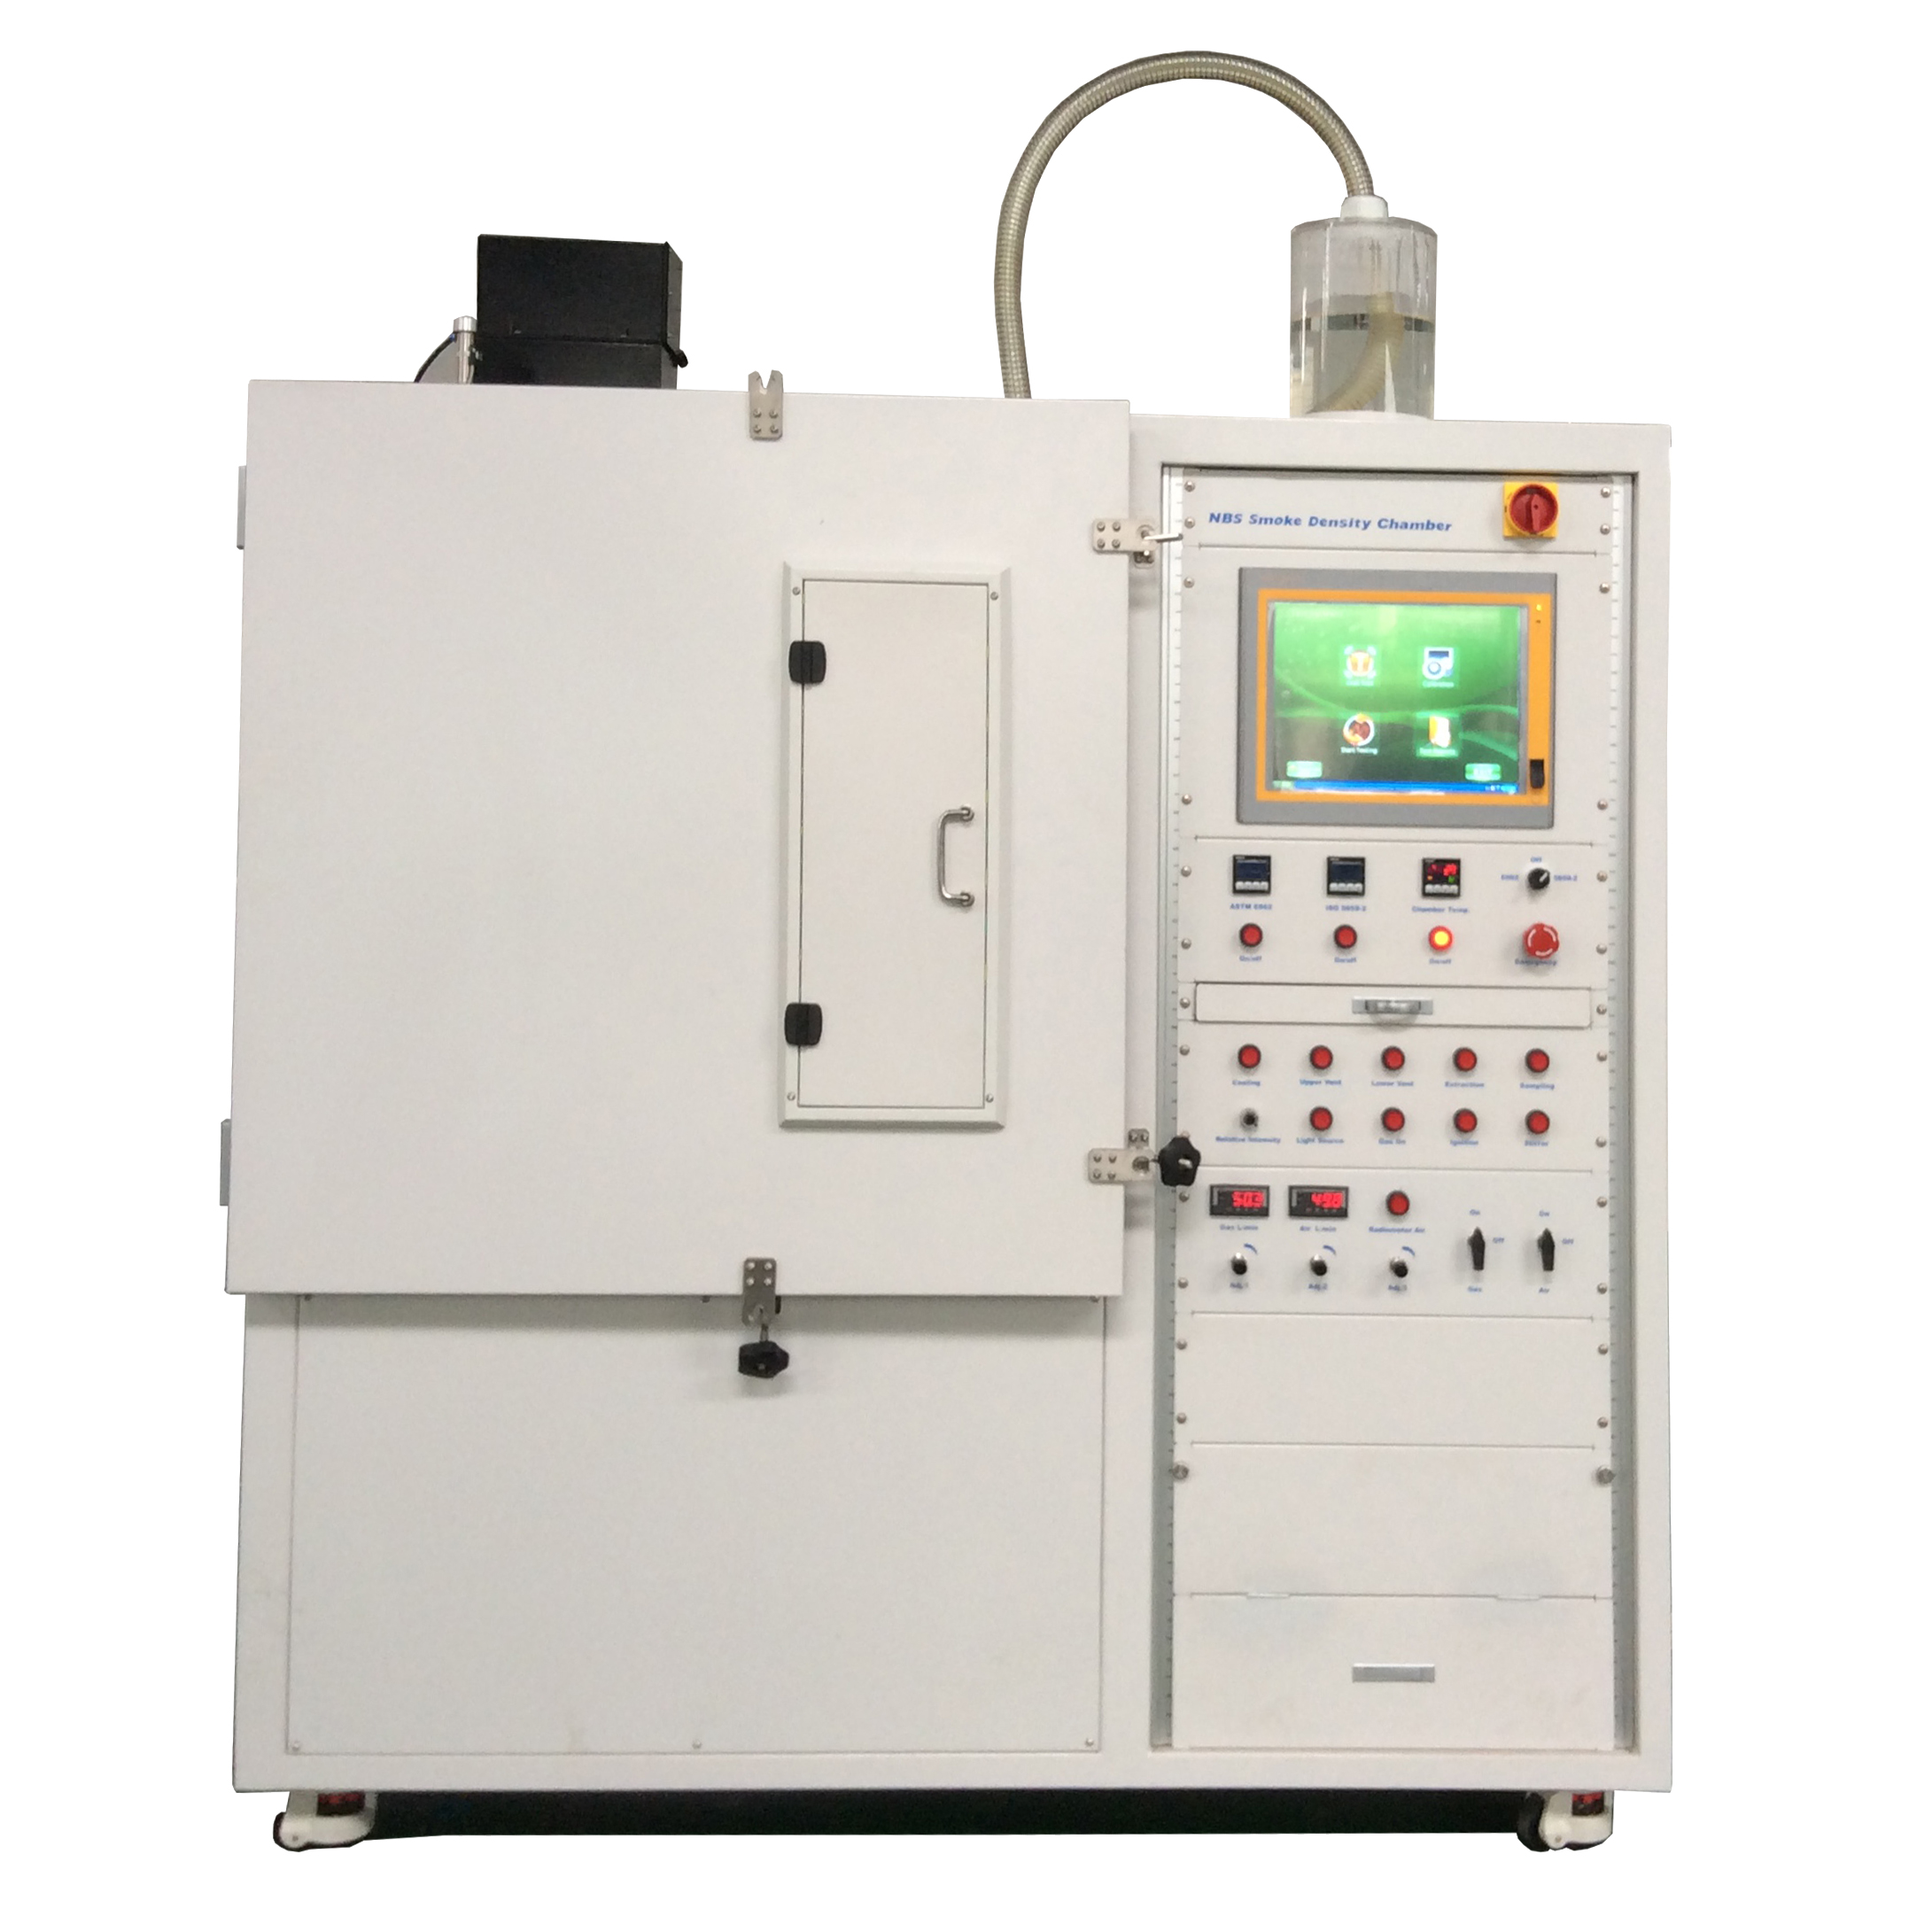 ASTM E 662, ISO 5659 NBS Smoke Density Chamber